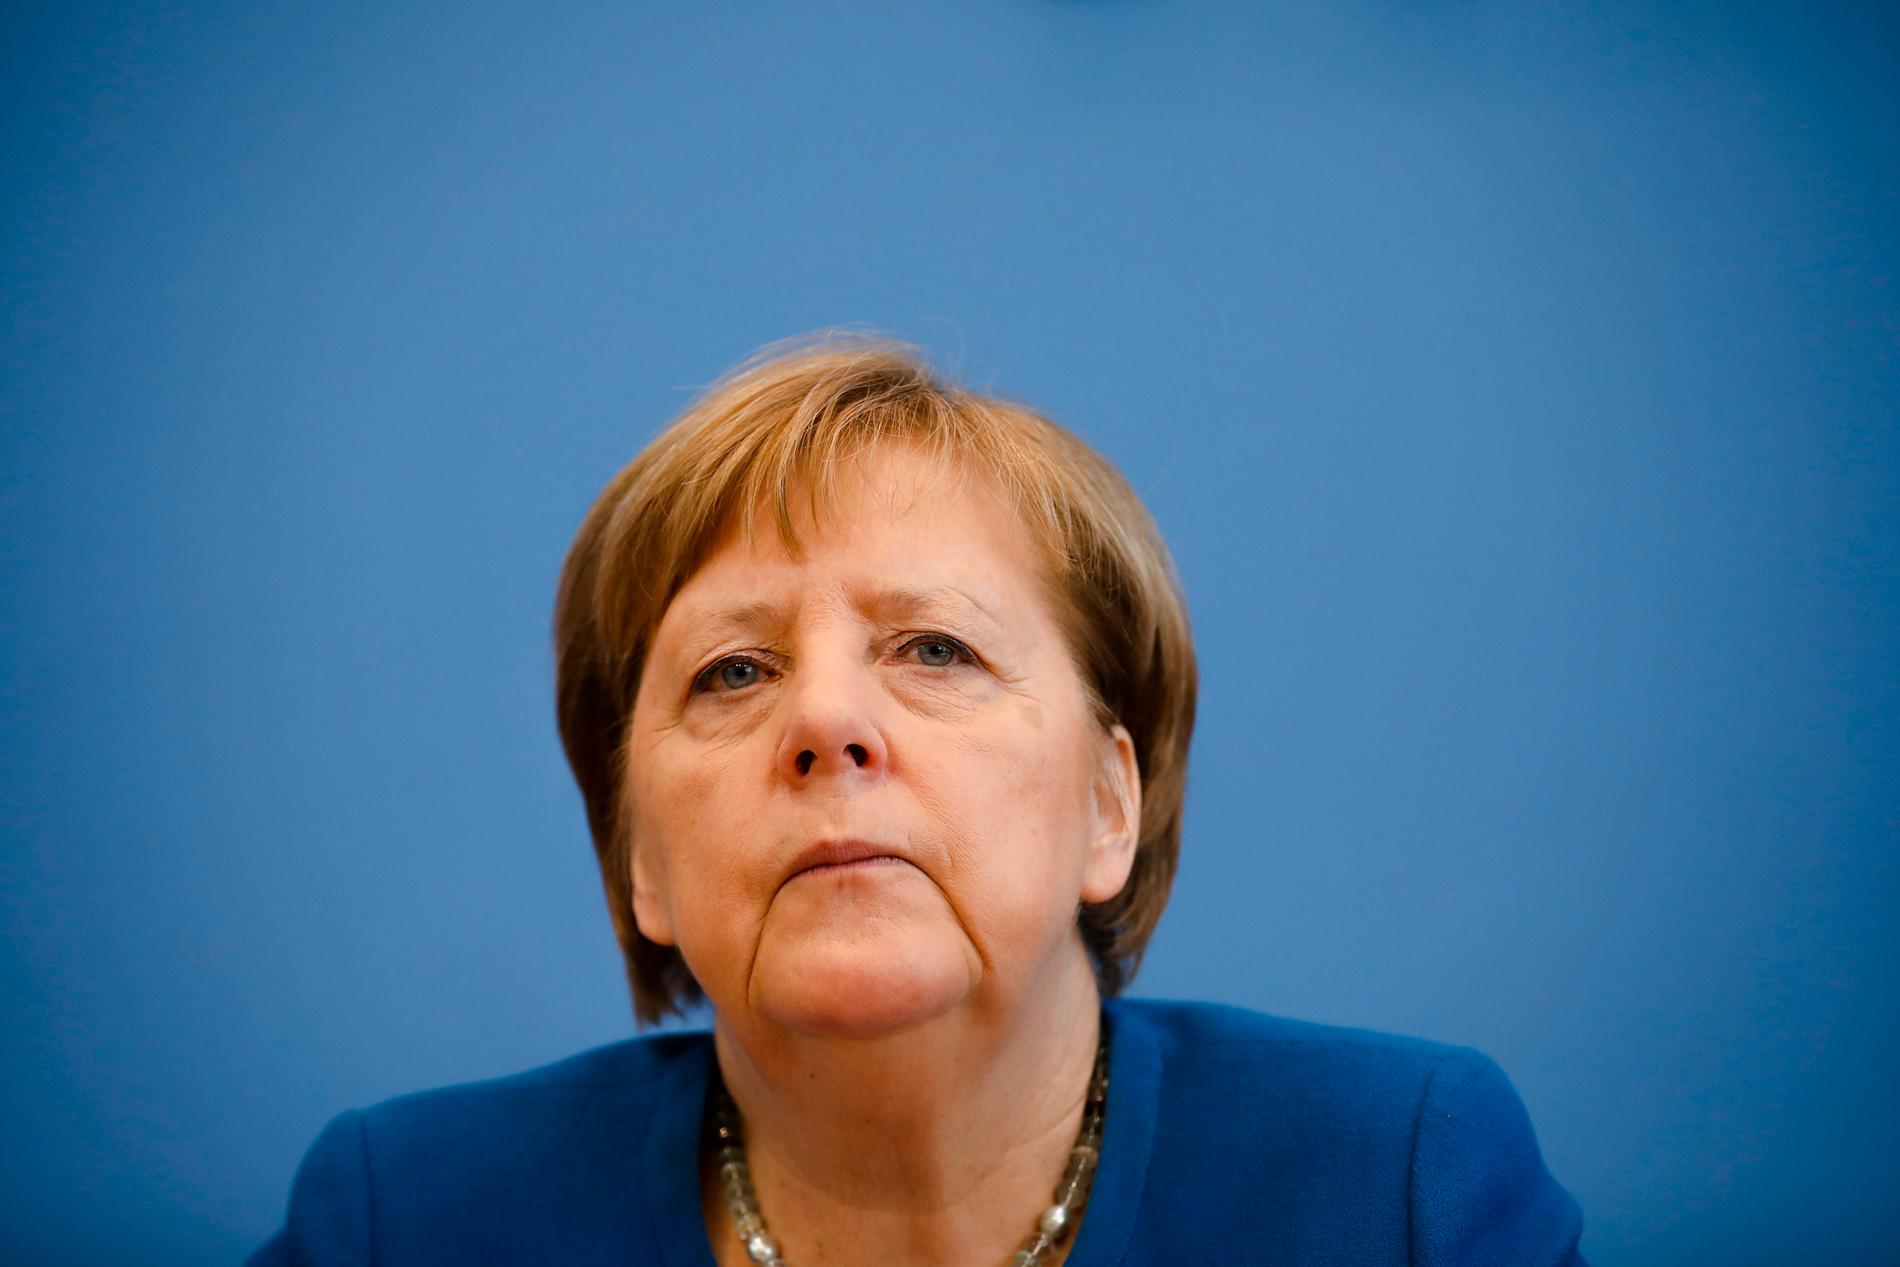 Tysklands regering under ledning av förbundskansler Angela Merkel och dess förbundsländer inför omfattande restriktioner mot öppethållande.